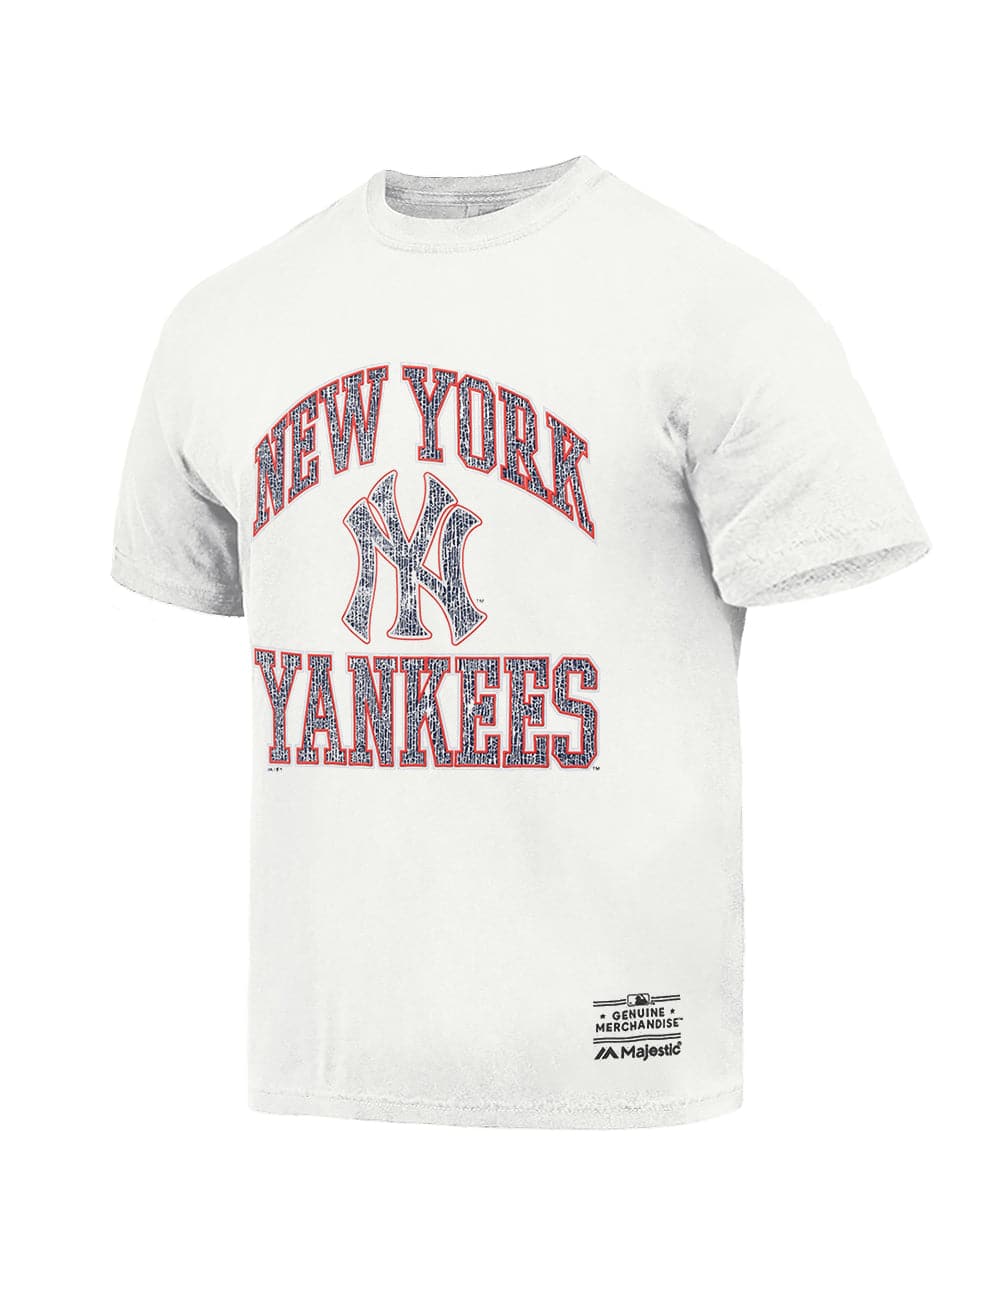 New York Yankees Men's City Script Wordmark Tee 23 / 2XL